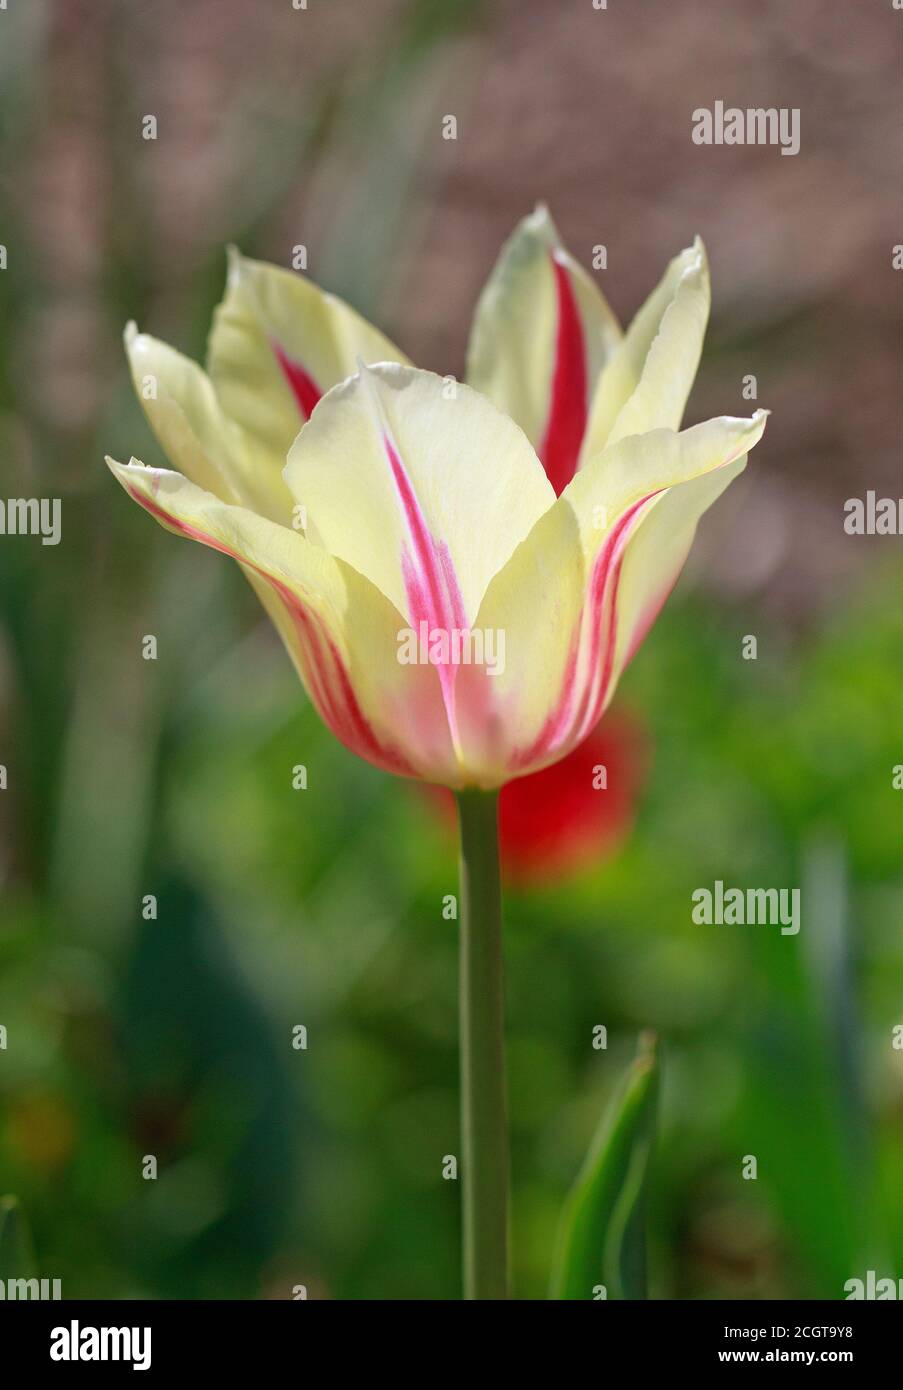 Tulipano monocolore color crema con una sottile striscia rossa contro uno sfondo giardino sfocato Foto Stock